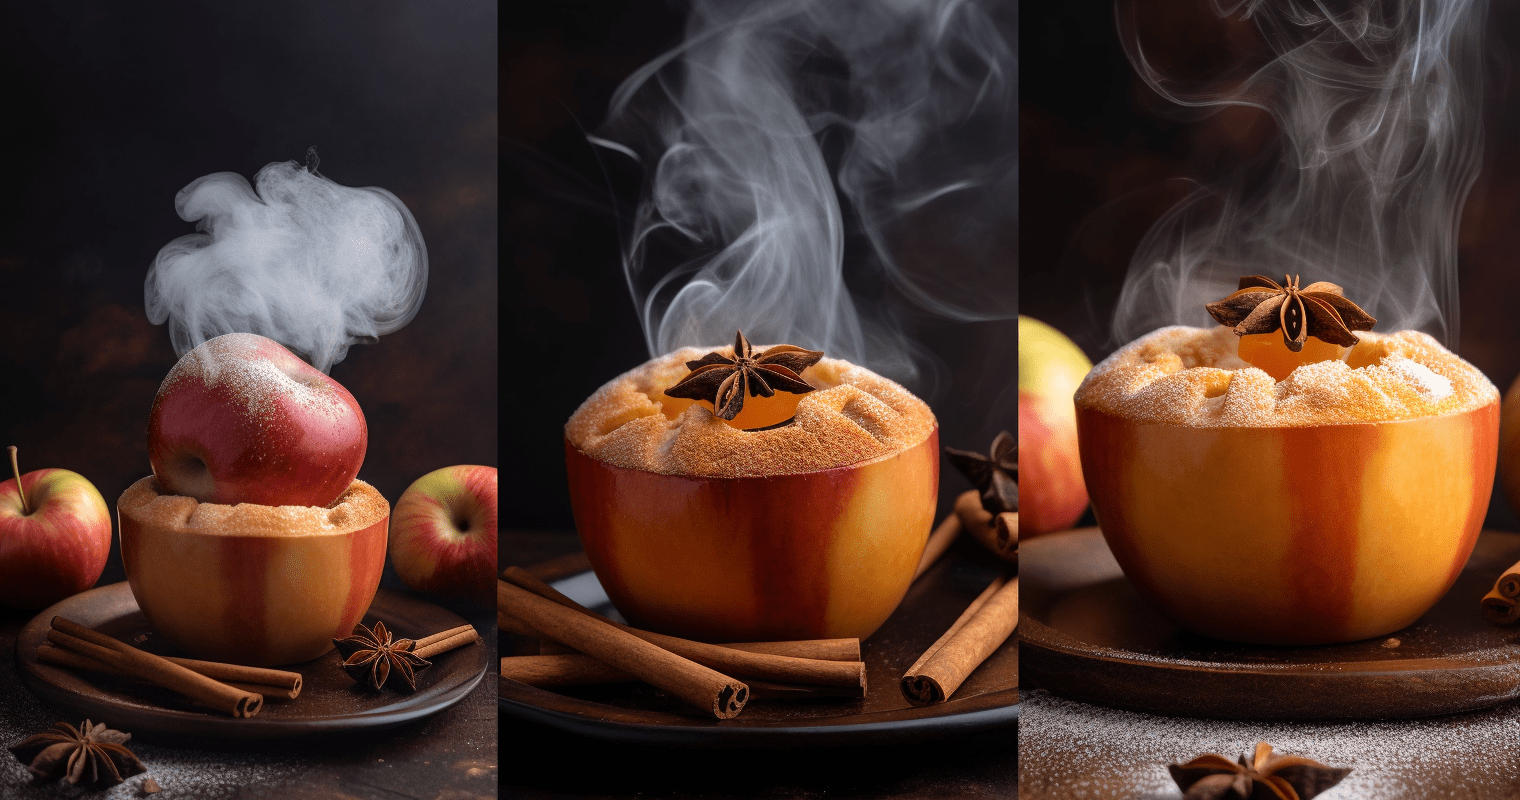 Fall-inspired baked apples